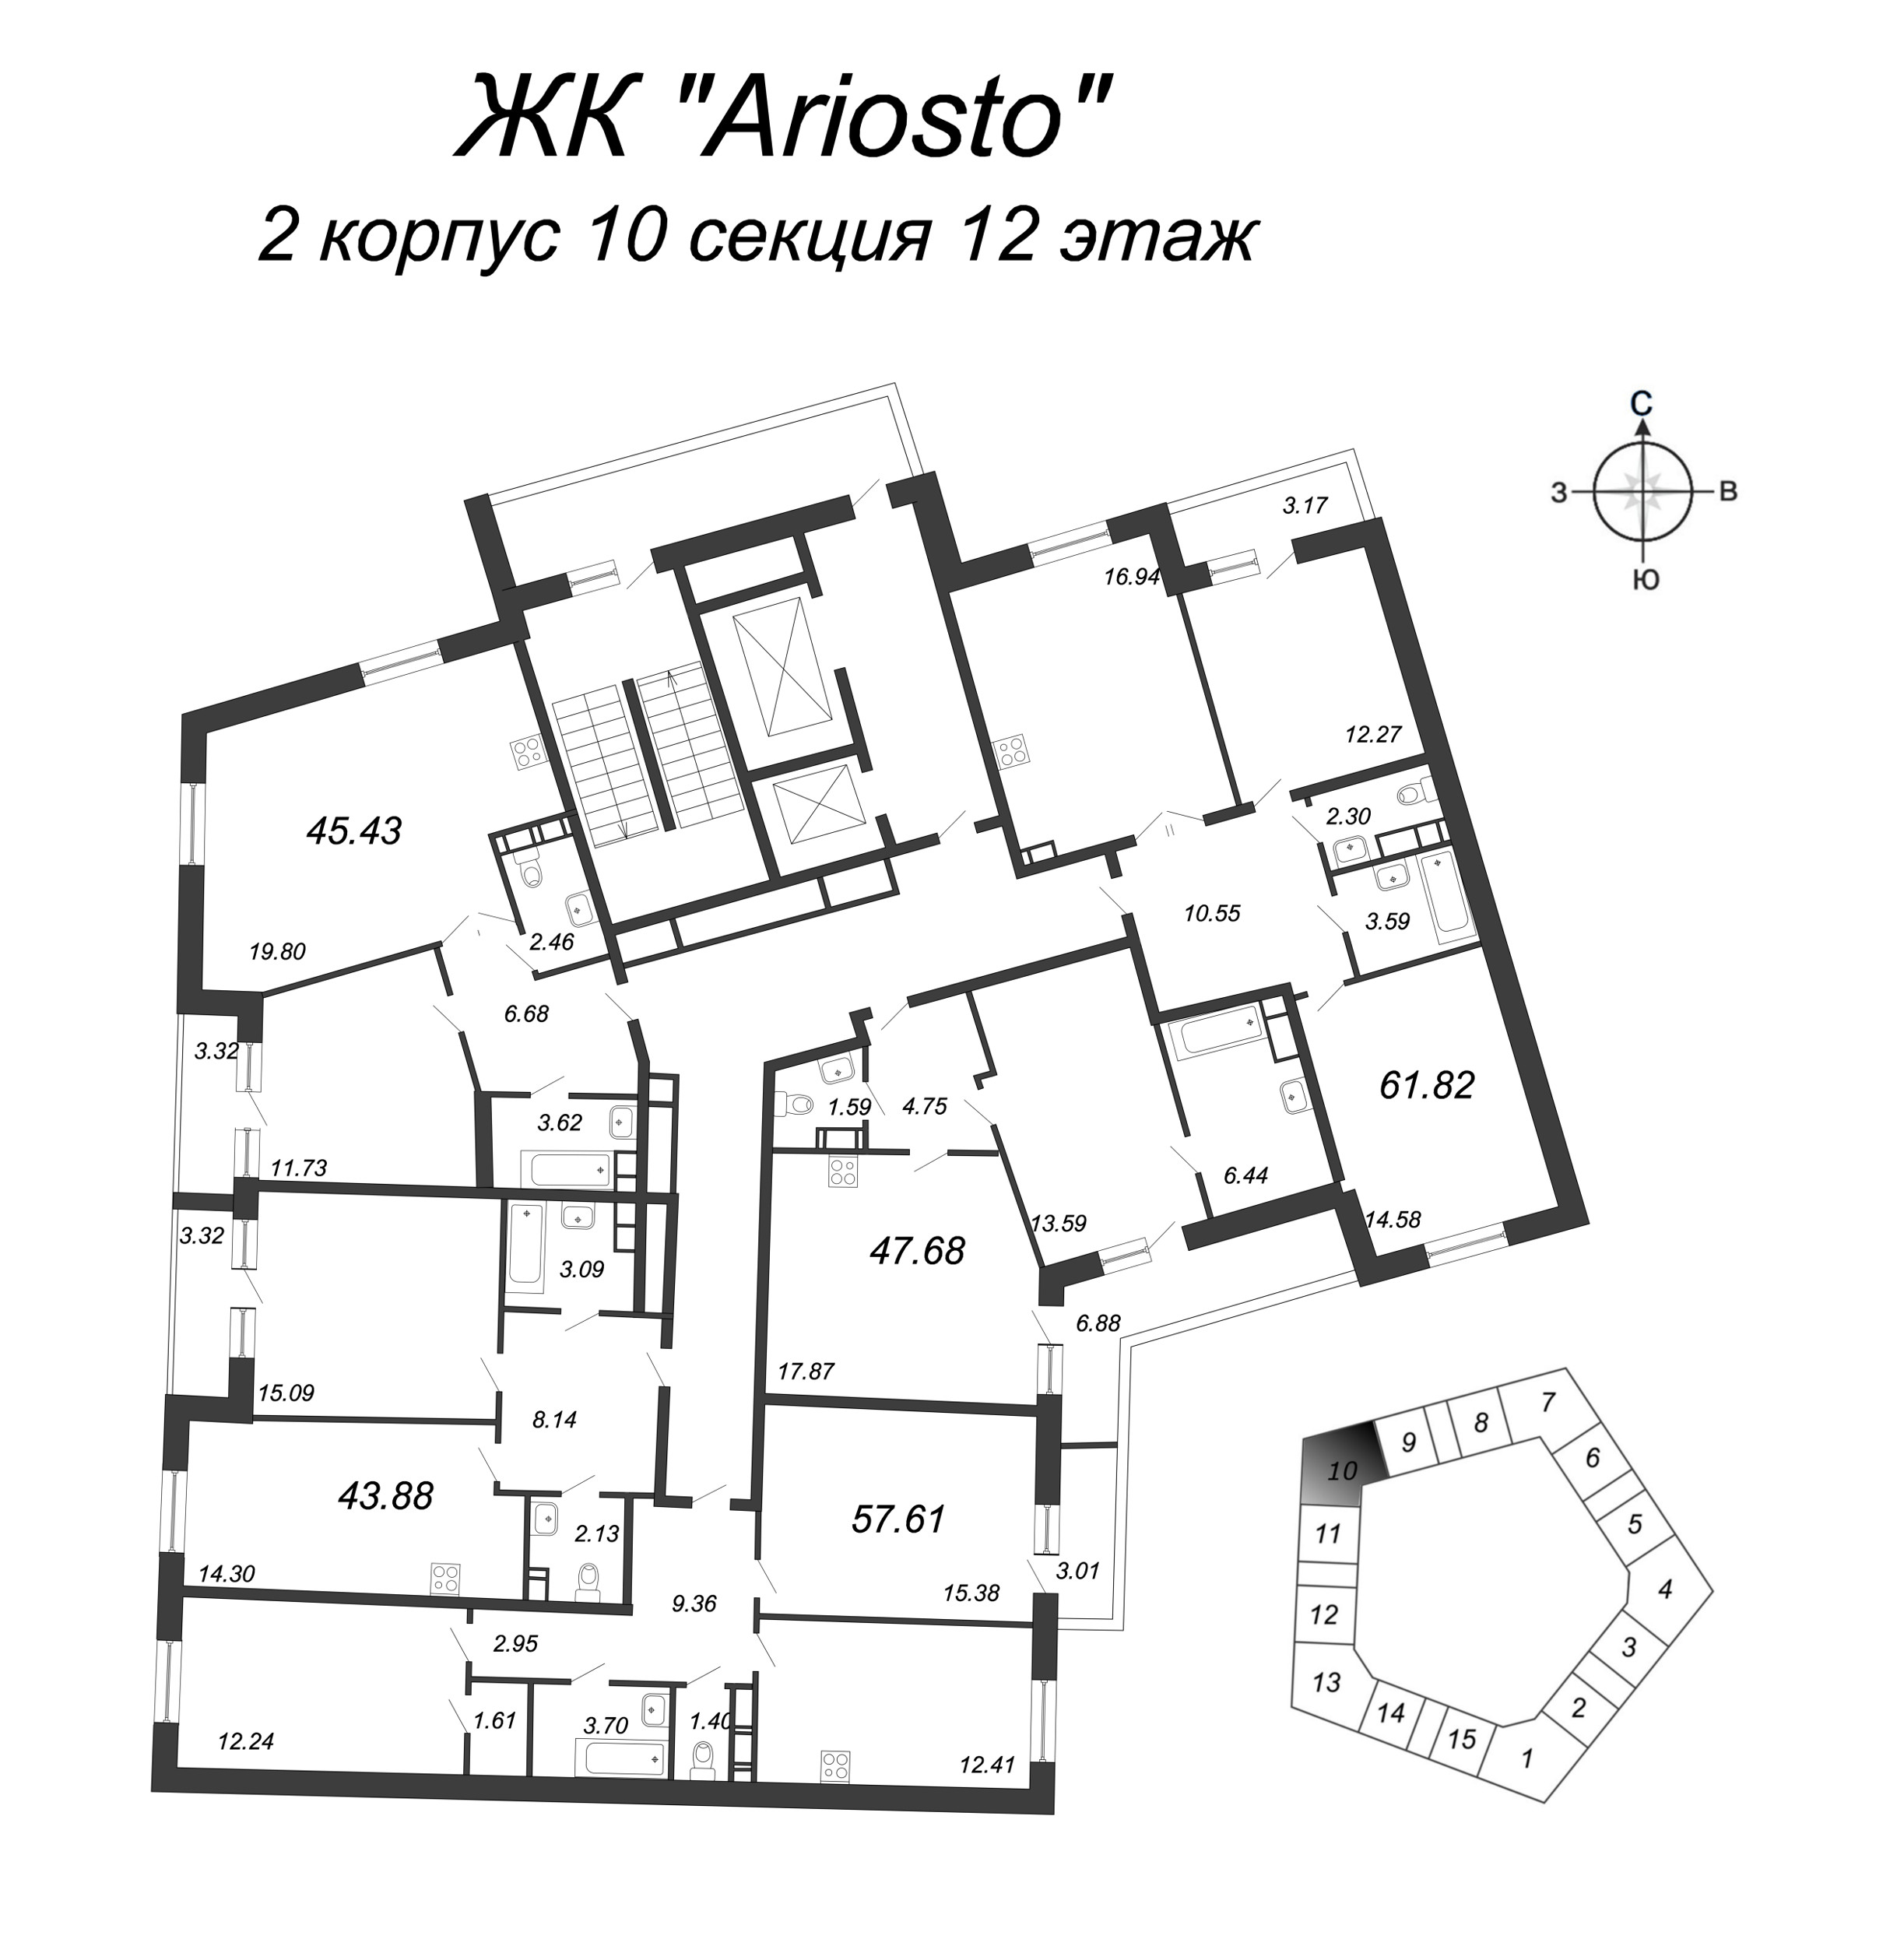 2-комнатная квартира, 57.61 м² в ЖК "Ariosto" - планировка этажа